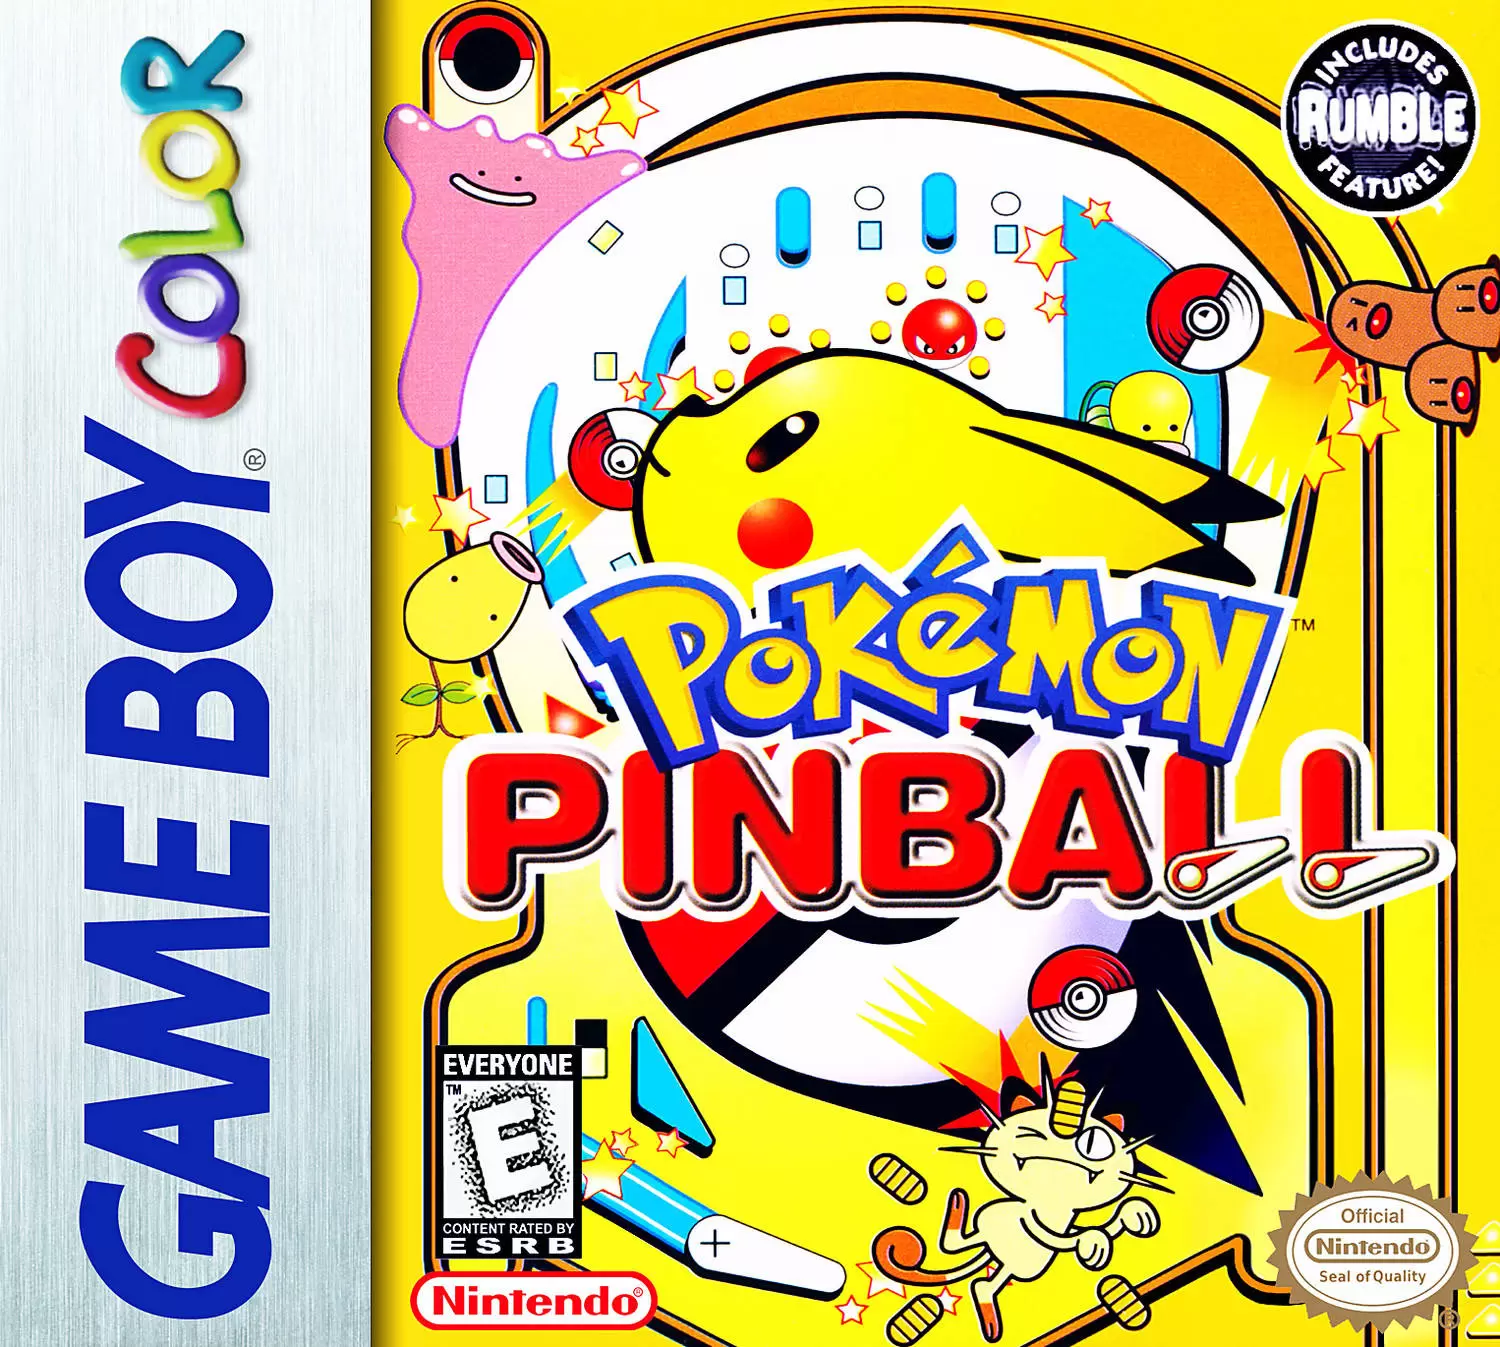 Game Boy Color Games - Pokémon Pinball